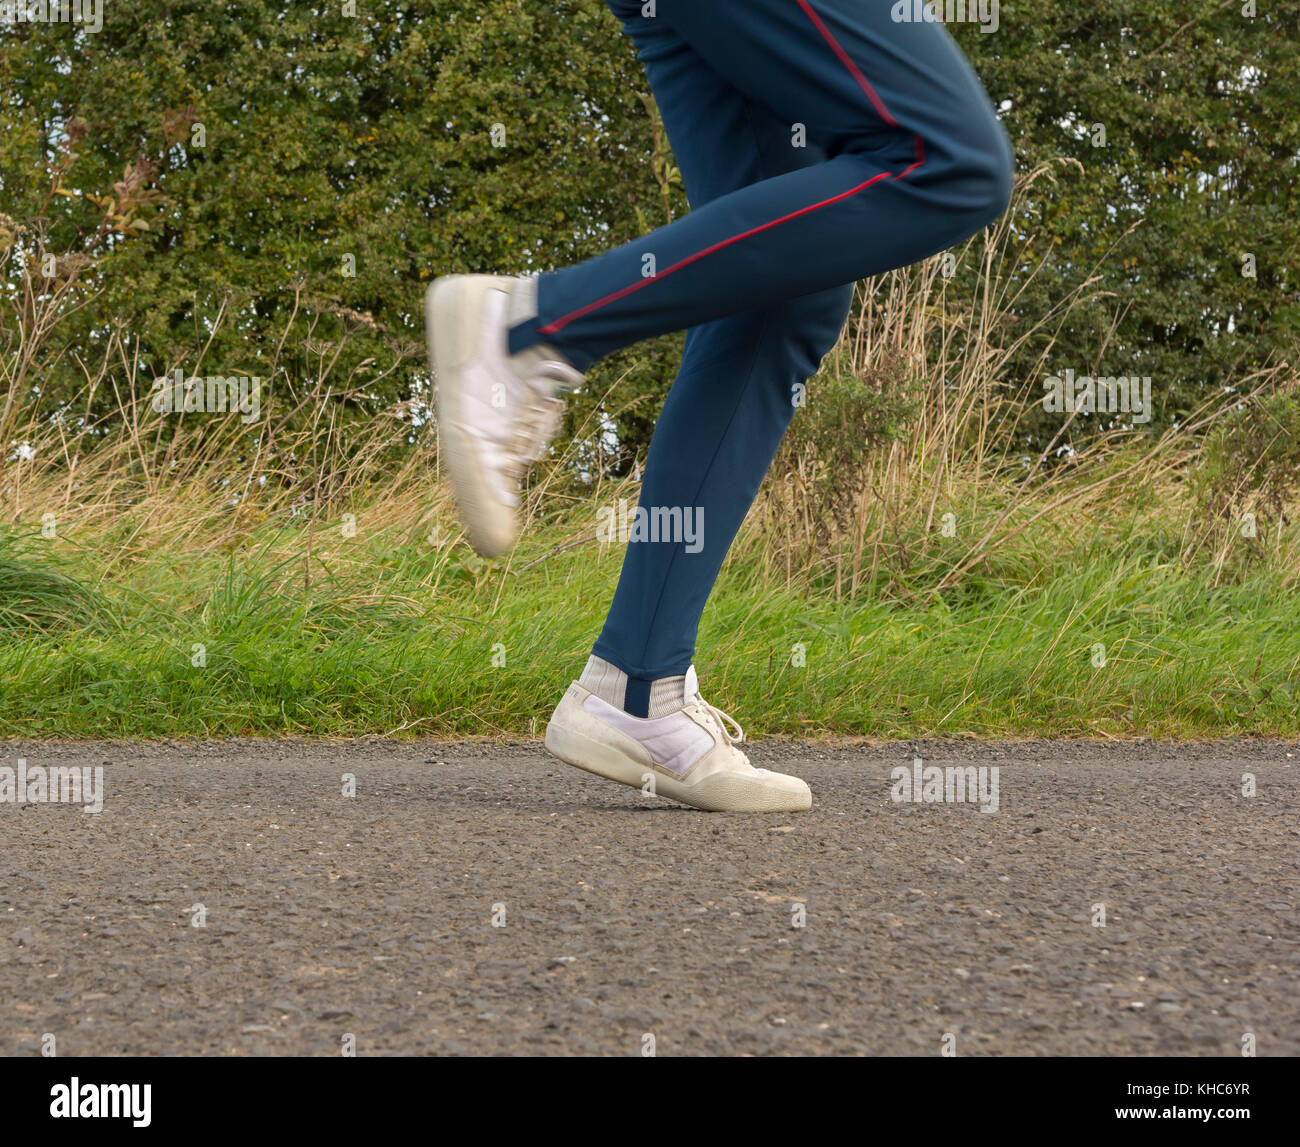 A piedi per gli amanti del jogging e formatori che mostra l'azione in esecuzione Foto Stock